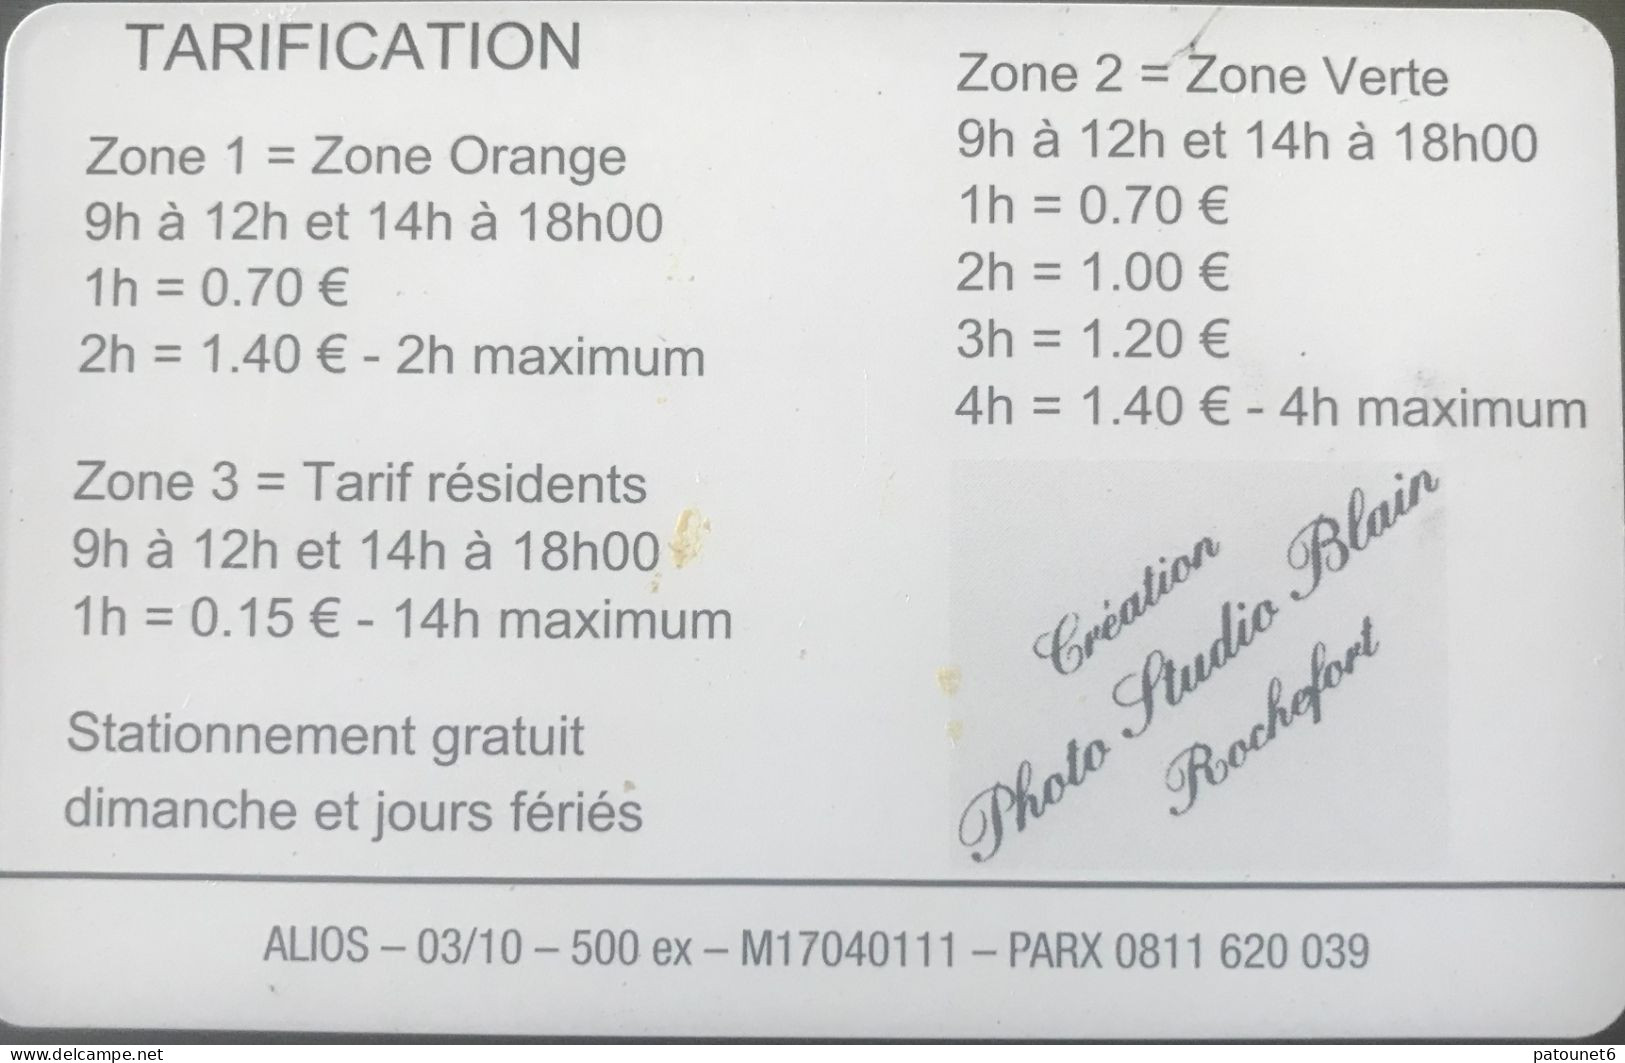 PIAF  -   ROCHEFORT   -   Fontaine, Place Colbert  -  OMNIPARC, Gpe Q PARK -  100 Unités - 35 E. - Cartes De Stationnement, PIAF